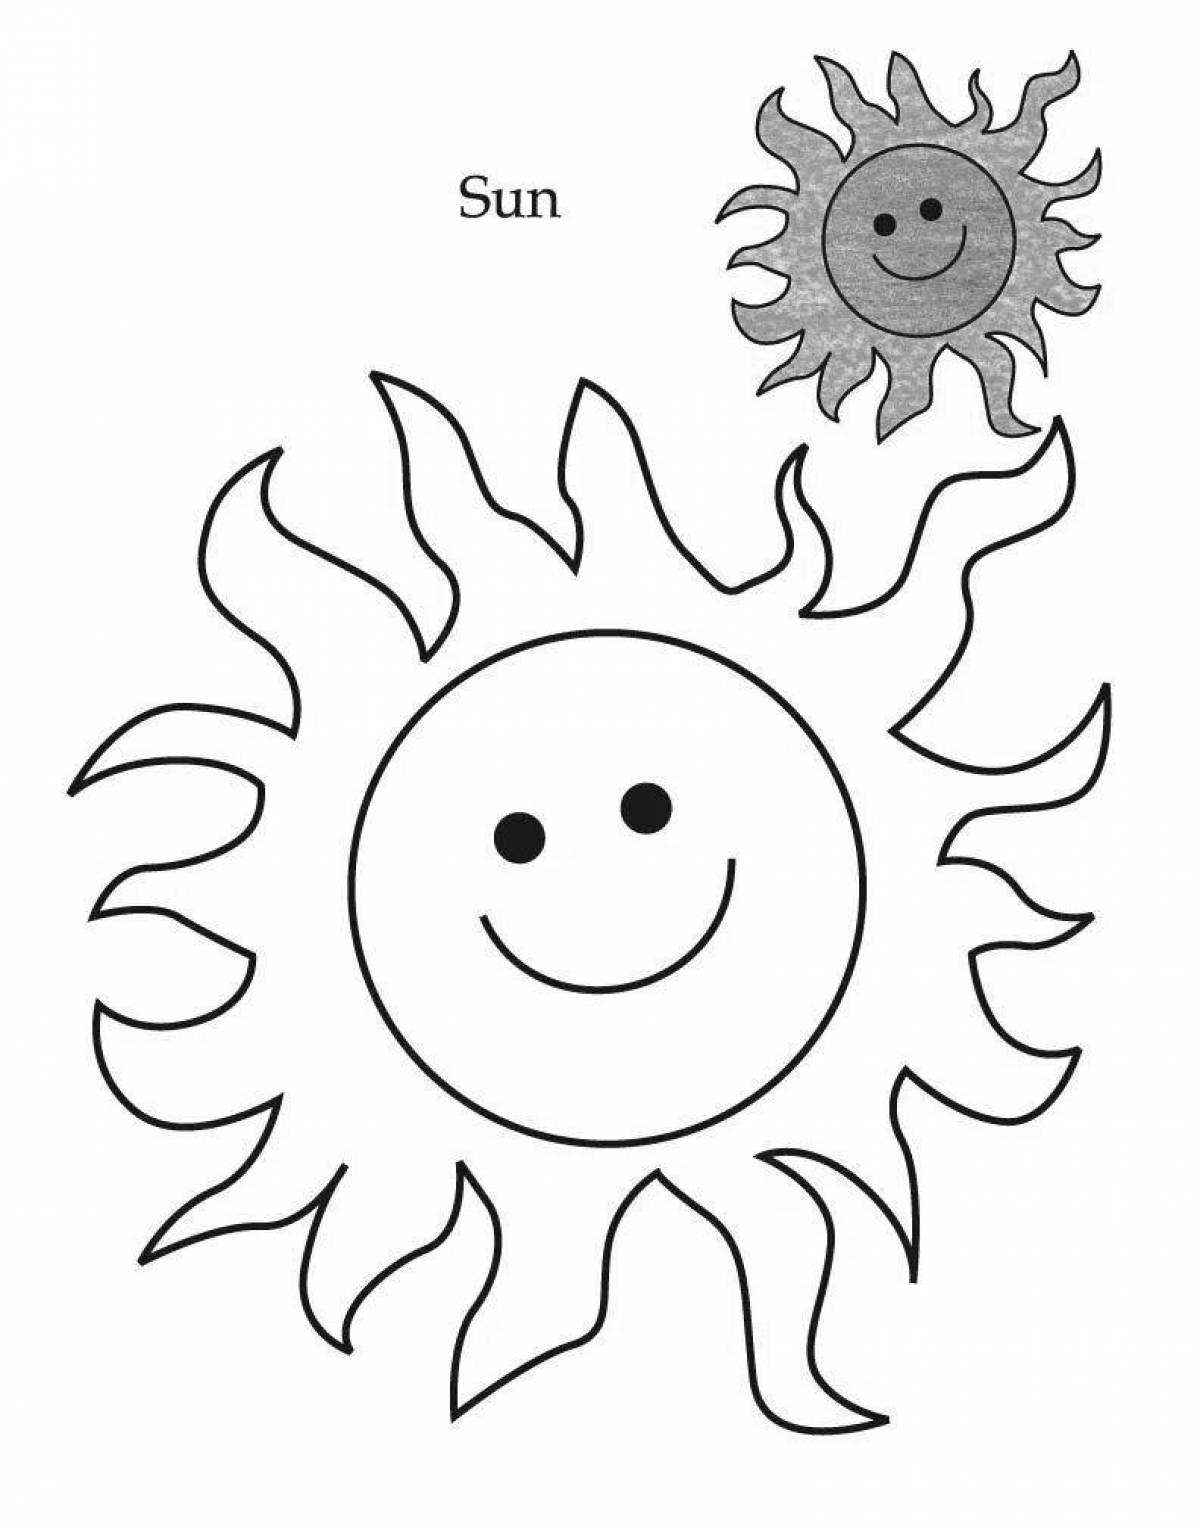 Sun drawing #9